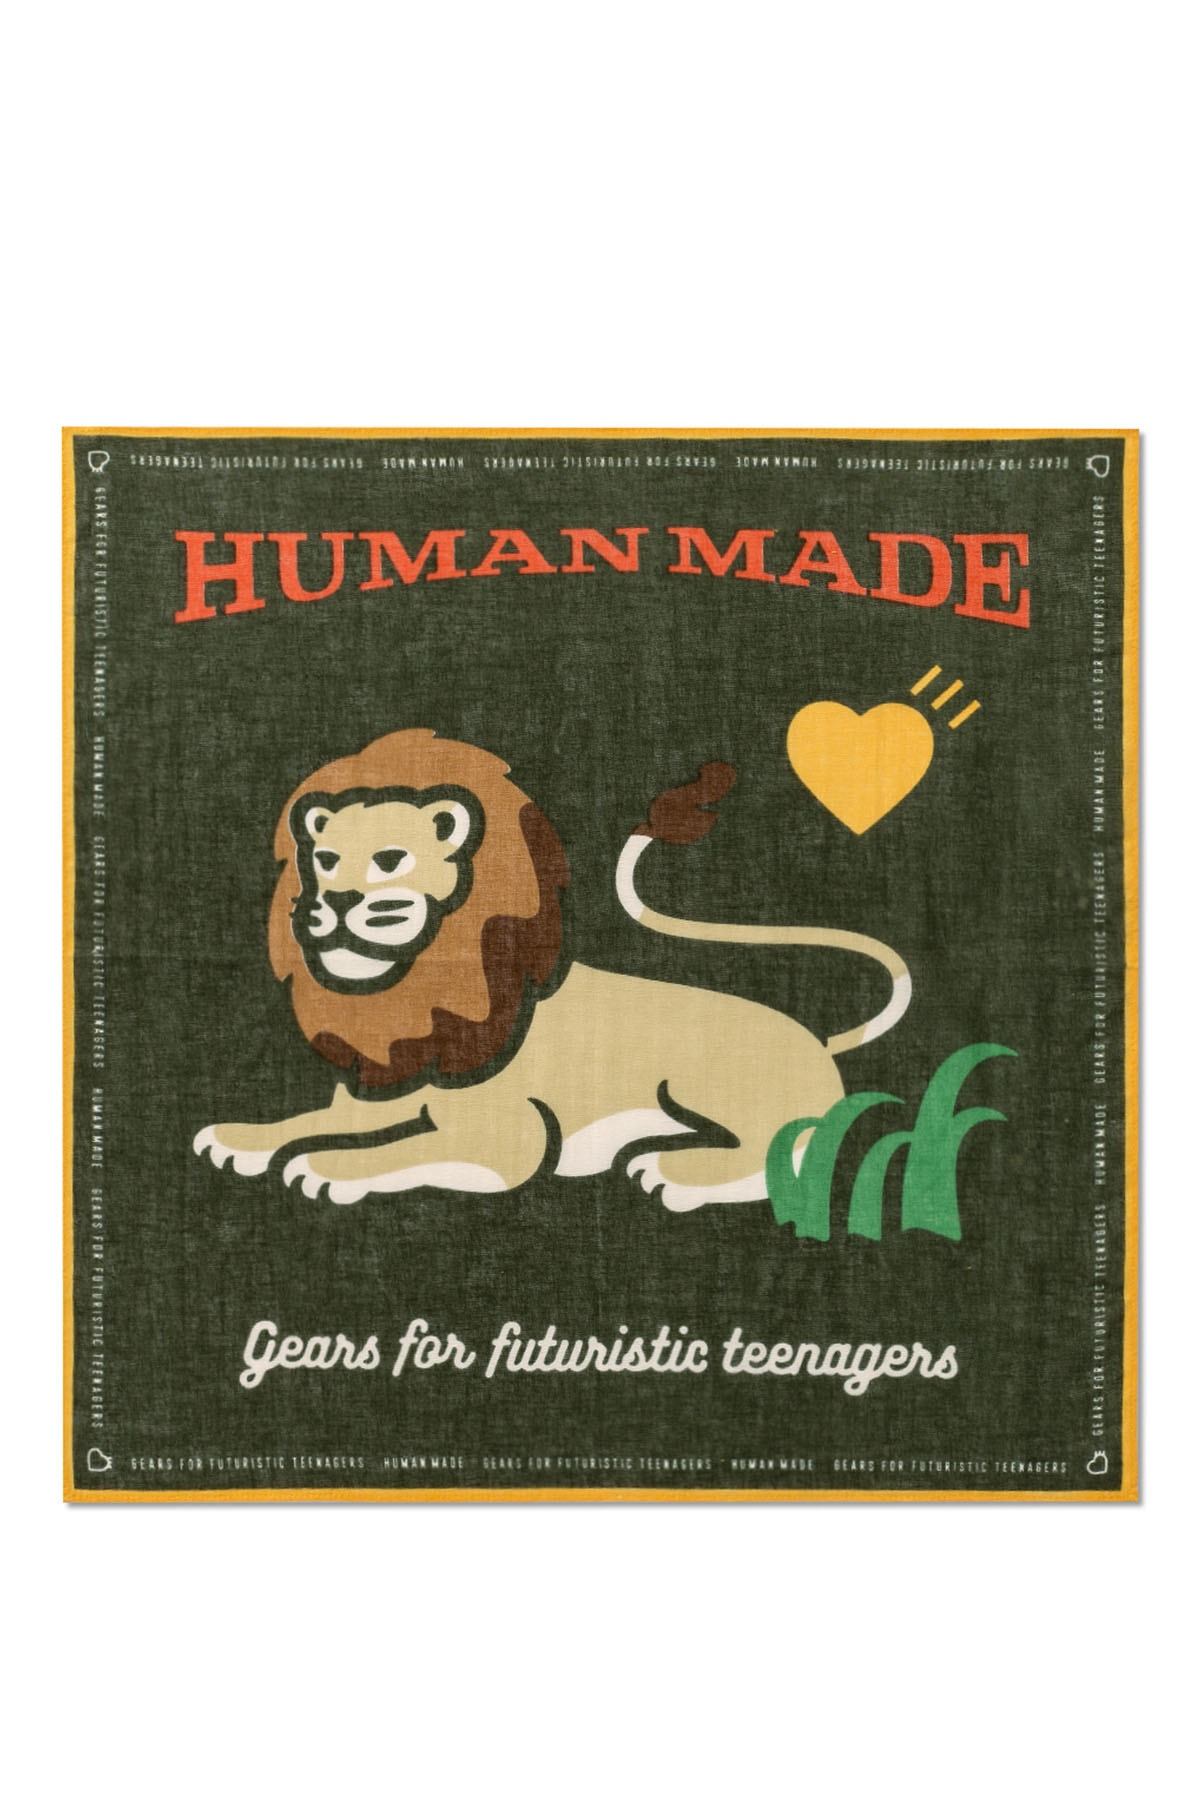 ヒューマンメイドとHBXが新たなコラボレーション企画としてライオン・カプセルコレクションを公開 Human Made and HBX unveil the Lion Capsule Collection as a new collaborative project.